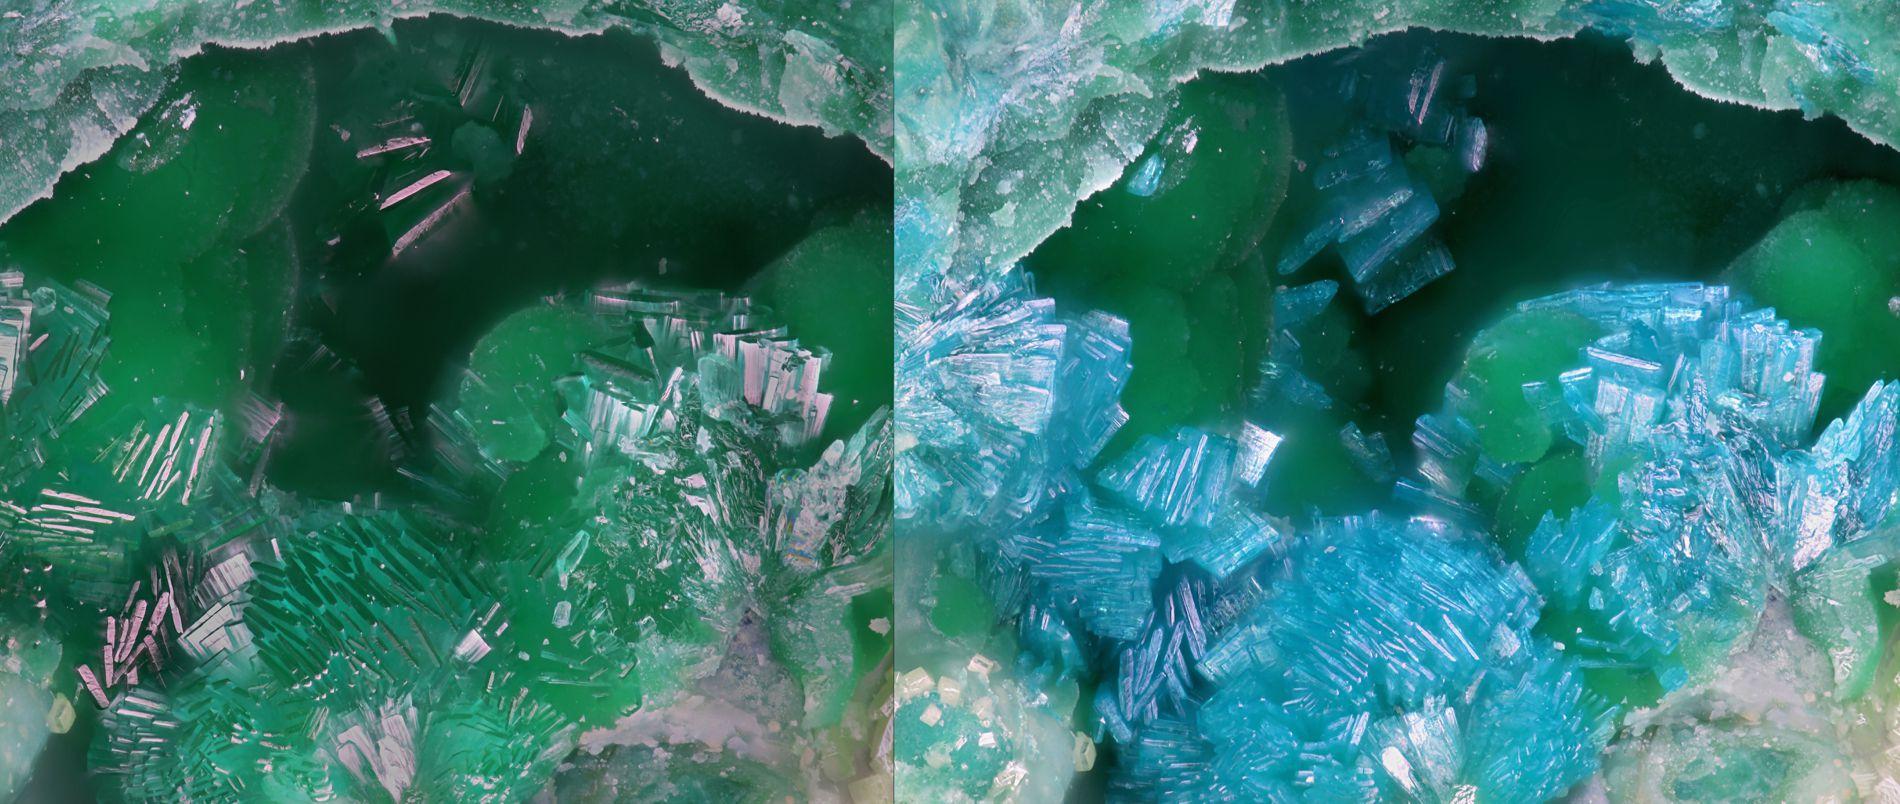 Les cristaux de heimite changent de couleur sous un microscope électronique à balayage. [SCNAT - Remo Zanelli]